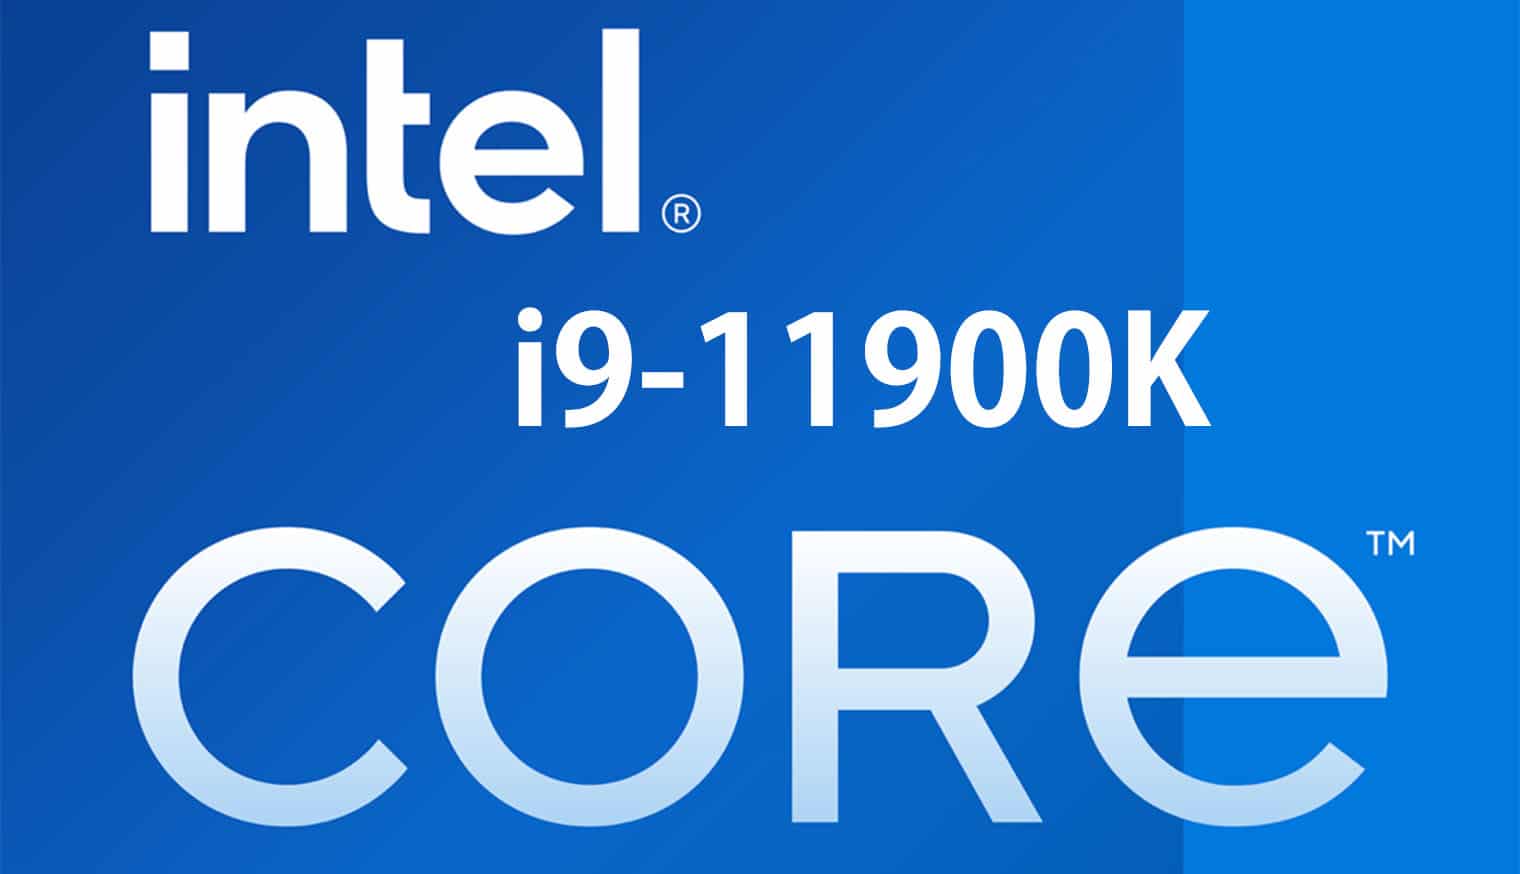 La linea di CPU Intel Core di undicesima generazione per desktop con nome in codice Rocket Lake-S verrà lanciata il prossimo anno con quattro modelli includendo il falgship Intel Core i9-11900K. (FOTO) L'informazione è stata pubblicata su Twitter da Davidbepo e trasformata in un utile grafico da Harukaze5719 che ci dà modo di dare uno sguardo generale alle nuove CPU e alle rispettive specifiche. La gamma di CPU desktop Intel Rocket Lake-S includerà i nuovissimi core Cypress Cove che, come vedremo dai benchamark di cui ti parlerò nella seconda parte di questo articolo, hanno mostrato un potenziale enorme, con specifiche da vera ammiraglia. Tuttavia bando alle ciance e iniziamo a parlare delle specifiche di questi nuovi Intel Core di undicesima generazione che, per comodità sono descritte in dettaglio di seguito. Intel Core di undicesima generazione: Core i9-11900K 8 core e 16 thread Rocket Lake (FOTO) Ad aprire questa lista di Intel Core di undecisma generazione ci pensa l'Intel Core i9-11900K il quale sarà la CPU desktop Rocket Lake di di punta. Il chip presenterà 8 core e 16 thread e ciò si tradurrà in 16 MB di cache L3 (2 MB per core) e 4 MB di cache L2 (512 KB per core). In termini di boost clock, l'Intel Core di undicesima generazione funziona a frequenze di base di 3,5 GHz ma per quanto riguarda il boost, la CPU presenterà un boost clock massimo di 5,2 GHz (1 core) mentre la frequenza di boost all-core verrà mantenuta a 4,8 GHz. Il chip presenterà anche Thermal Velocity Boost che dovrebbe fornire un salto di 100 MHz nella frequenza di clock massima, ciò dovrebbe portare a un boost clock single-core di 5,3 GHz, rendendola la prima CPU a raggiungere una frequenza così alta fuori dagli schemi. Tuttavia, ricorda che indipendentemente dall'utilizzo dei core Cypress Cove, l'Intel Core i9-11900K presenterà core e thread inferiori rispetto all'Intel Core i9-10900K, ciò è in parte dovuto al backporting di Cypress Cove sul raffinato nodo di processo a 14 nm. (FOTO) Si dice che la CPU presenti un limite di potenza del 1° stadio di 125 W che è standard per una SKU Intel di punta, mentre invece il limite di potenza del 2° stadio o PL2 è valutato a 250 W. Ciò significa che quando raggiunge la velocità di clock massima pubblicizzata, la CPU potrebbe effettivamente prelevare la suddetta quantità di watt dall'alimentatore rendendolo uno dei chip a 8 core più assetati di energia mai prodotti. Questo potrebbe anche spiegare perché Intel non ha scelto 10 core e 20 thread sulla sua linea Intel Core di undicesima generazione poiché si sarebbe rivelato essere un mostro assetato di potenza di un chip che supera anche il limite di potenza di 250 W. Intel Core di undicesima generazione: Core i7-11700K 8 core e 16 thread Rocket Lake (FOTO) Al secondo posto di questa lista di Intel Core di undicesima generazione c'è il Core i7, e possiamo notare che Intel non segmenterà il conteggio core/thread su un livello inferiore al Core i9. Il Core i7-11700K presenta la stessa configurazione di core dell'Intel Core i9-11900K ma viene fornito con velocità di clock ridotte. Si dice che il chip presenti un boost clock di 5,0 GHz su un singolo e 4,6 GHz su tutti i suoi 8 core. La CPU trasporterà anche la stessa quantità di cache, quindi non è cambiato nulla, ma la differenza principale dovrebbe derivare dai clock e dai limiti di potenza. Questo chip con cestello inferiore avrà un limite di circa 225-250 W in PL2 (Power Limit 2) mentre il limite PL1 sarà standard a 125 W. Sarà interessante vedere come le CPU Rocket Lake overcloccano poiché la minima differenza tra i chip Core i9 e Core i7 può essere superata da un piccolo overclock; per quanto riguarda i prezzi, il Core i7 sarà anche più economico della variante Core i9, ma non sappiamo ancora come Intel determinerà il prezzo delle sue CPU desktop Rocket Lake-S a 8 core. (FOTO) Ci sono rumors secondo i quali Intel potrebbe valutare in modo aggressivo questa serie di Intel Core di undicesima generazione, piazzandoli a circa $ 400 US per il Core i9 e $ 300 US per il Core i7, il che potrebbe rivelarsi un'ottima decisione se vogliono davvero andare contro le parti basate sullo Zen 3 di AMD nel sotto i $ 500 Segmento USA. Intel Core di undicesima generazione: Core i5-11600K 6 core e 12 thread Rocket Lake (FOTO) Il Core i5-11600K è un chip a 6 core con 12 thread. Il Core i5-11600K dovrebbe andare contro l'AMD Ryzen 5 5600X che è una CPU fenomenale a sé stante. Si dice che il Core i5-11600K abbia una velocità di clock di 4,9 GHz su un singolo e 4,6 GHz su tutti i core. Si noti che il Thermal Velocity Boost non sarà disponibile sugli SKU inferiori ai modelli Core i9, quindi non dovremmo aspettarci un limite di frequenza esteso sugli SKU Core i7 e Core i5, mentre per quanto riguarda le cache, il chip conterrà 12 MB di cache L3 e 3 MB di cache L2. Ora il principale terreno di prova per questo chip contro l'AMD Ryzen 5 5600X sarà la sua prestazione in rapporto al prezzo visto che il Ryzen 5 5600X con un prezzo consigliato di $ 299 negli Stati Uniti è leggermente più alto in termini di prezzo se confrontato con il suo predecessore. Il Core i5-11600K invece sostituirà il Core i5-10600K che ha un prezzo al dettaglio di circa $ 260 US e, se Intel si attiene alla sua strategia di prezzo, il Core i5-11600K potrebbe effettivamente diventare un chip di vendita caldo nel mercato dei giochi mainstream. (FOTO) Detto questo, dobbiamo anche tenere conto della disponibilità del Core i5-11600K in quanto, tecnicamente, le SKU tradizionali non sono influenzate molto dai problemi di fornitura come nel caso del Ryzen 5 5600X, ma un piccolo ritardo nelle scorte potrebbe far perdere a Intel l'opportunità di creare un'ammaccatura nel segmento Ryzen 5 di AMD. I consumatori hanno già visto ciò che AMD ha fornito come successore del suo Ryzen 5 3600X, quindi ora è il momento di vedere cosa può fare il successore del Core i5-10600K. Intel Core di undicesima generazione: Core i5-11400 6 core e 12 thread Rocket Lake Infine, in questa lista dei nuovi Intel Core di undicesima generazione, abbiamo il Core i5-11400 che è una CPU desktop Rocket Lake di 11a generazione bloccata e non K. (FOTO) Intel difficilmente prende la strada dei chip bloccati, anzi, è un qualcosa che fa raramente in quanto, come in questo caso, ciò divorerà le vendite delle sue SKU della serie K; il Core i5-11400 tra l'altro, in quanto tale, sarà un chip a 6 core e 12 thread con una configurazione del core simile al Core i5-11600K ma velocità di clock inferiori di 4,4 GHz (boost di 1 core) e 4,2 GHz (boost di tutti i core). Il chip presenterà un limite di potenza standard da 65 W in PL1 e 125 W in PL2. Sebbene la CPU tecnicamente non supporti l'overclock, i fornitori di schede madri incorporeranno BIOS e funzionalità per aumentare i limiti di potenza delle SKU non K per i chip Rocket Lake, ciò dovrebbe produrre una base più alta e frequenze di boost più stabili quindi, nel complesso, otterrai prestazioni simili alle SKU della serie K a un prezzo inferiore. Ecco tutto ciò che sappiamo sulle CPU desktop Intel Core di undicesima generazione La piattaforma CPU desktop Intel Rocket Lake-S dovrebbe supportare il socket LGA 1200 che farà il suo debutto con le CPU Comet Lake-S anche se su schede madri della serie 400. (FOTO) I processori Intel Core di undicesima generazione verranno lanciati insieme alle schede madri della serie 500, ma da allora è stato confermato che le schede madri LGA 1200 offriranno il supporto per le CPU Rocket Lake-S, soprattutto considerando il fatto che PCIe Gen 4.0 è una caratteristica importante di Z490 schede madri che sarebbero abilitate solo con l'uso di CPU desktop Rocket Lake-S. Tra le "main feature" di questi nuovi Intel Core di undicesima generazione abbiamo: Prestazioni migliorate con la nuova architettura core Cypress Cove Fino a 8 core e 16 thread (guadagni IPC a doppia cifra su Skylake) Nuova architettura grafica Xe (prestazioni fino al 50% in più rispetto a Gen9) Maggiore supporto di memoria DDR4 3200 MHz Corsie CPU PCIe 4.0 (disponibile sulle schede madri Z490 e Z590) Display avanzato (HDMI 2.0b integrato, DP1.4a, HBR3) Corsie PCIe CPU x4 aggiunte = 20 corsie PCIe 4.0 CPU totali Enhanced Media (12 bit AV1 / HVEC, compressione E2E) Memoria collegata alla CPU o memoria Intel Optane Nuove caratteristiche e capacità di overclock Offload audio USB CNVi e Wireless-AX integrati USB 3.2 Gen 2x2 integrato (20G) LAN discreta Ethernet da 2,5 Gb Intel Thunderbolt 4 discreto(compatibile USB4) Si dice che l'architettura per le CPU Intel Core di decima generazione sia Cypress Cove, che secondo quanto riferito è un ibrido tra il design di Sunny Cove e Willow Cove, ma presenterà l'architettura della GPU Xe Gen 12. Ai colleghi di wccftech è stato anche detto che la serie di schede madri Z590 con supporto Thunderbolt 4.0 sarà annunciata entro la fine dell'anno, quindi aspettatevi maggiori informazioni sulle CPU Rocket Lake nei prossimi mesi. I benchmark dell'Intel Core di undicesima generazione All'inizio di questo mese, l'Intel Core di undicesima generazione di punta, ovvero il Core i9-11900K, è apparso nel database di benchmark Ashes of the Singularity abbinato a una GPU GeForce RTX 3080. Ora, il processore è stato confrontato con una GeForce RTX 2080 Ti, consentendo di fare ulteriori confronti tra esso e altri processori desktop recenti. https://twitter.com/TUM_APISAK/status/1334669804330860544 Secondo le new entry, il Core i9-11900K ottiene circa 6.075 punti con una GeForce RTX 2080 Ti e 32 GB di RAM. Il processore ha anche raggiunto un framerate di 61,9 FPS sul preset Crazy_1080p che esegue il preset DirectX 12, al contrario, un sistema Core i9-10900K simile ha ottenuto 5.700 punti, anche se ha due core in più rispetto al Core-11900K. Come ti dicevo sopra, sulla base delle informazioni passate, il flagship degli Intel Core di undicesima generazione, aveva già fatto trapelare le sue specifiche, inoltre avrà avrà 4 MB di cache L3 in meno rispetto al suo predecessore Comet Lake-S. Tuttavia, il Core i9-11900K è comunque riuscito a superare il Ryzen 9 5950X con un buon margine e, come mostra lo screenshot qui sopra, il Ryzen 9 5950X perde quasi 500 punti e 5 FPS nello stesso preset, sebbene abbia lo svantaggio di 16 GB di RAM, anziché 32 GB. I due processori sono stati confrontati sulla stessa API e con la stessa GPU, come riferimento, i core aggiuntivi del Ryzen 9 5950X lo aiuteranno a superare il Core i9-11900K nella maggior parte dei benchmark, come abbiamo già visto su Geekbench.